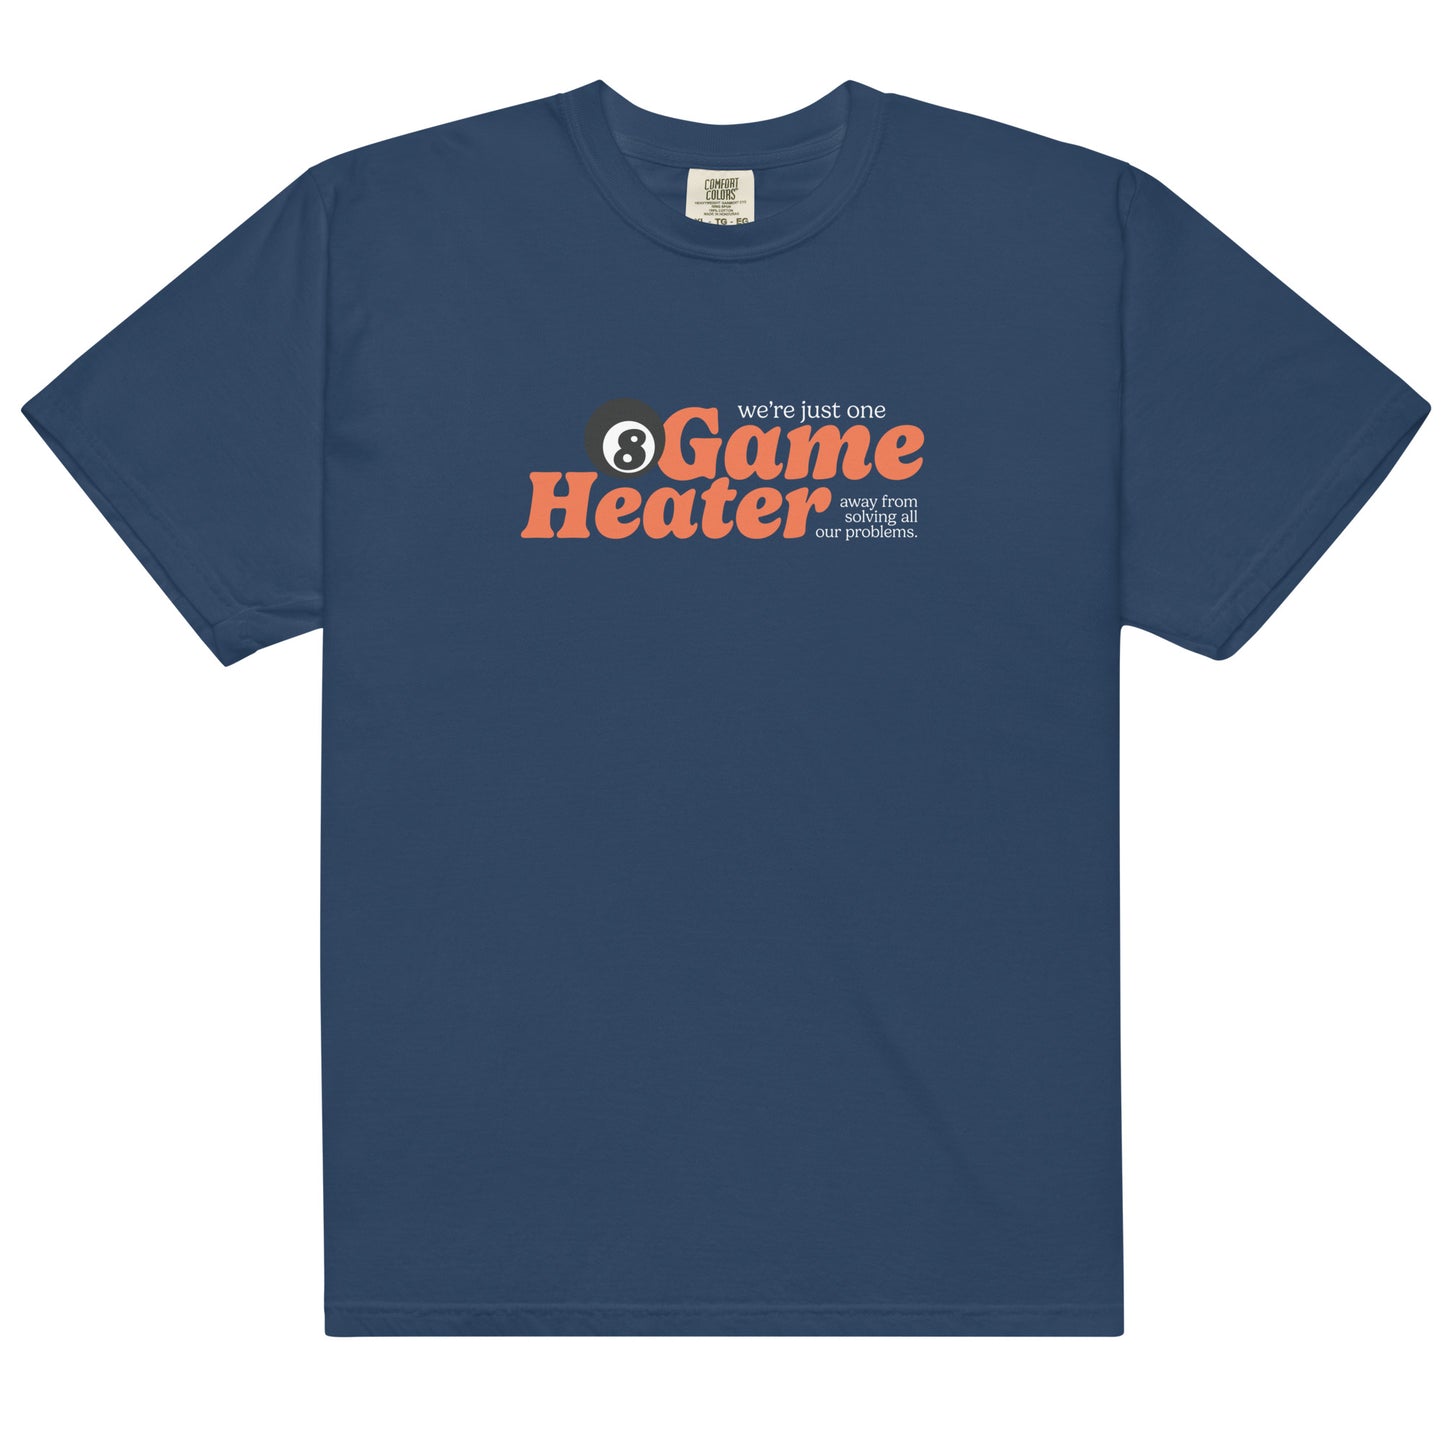 8 Game Heater Heavyweight T-Shirt